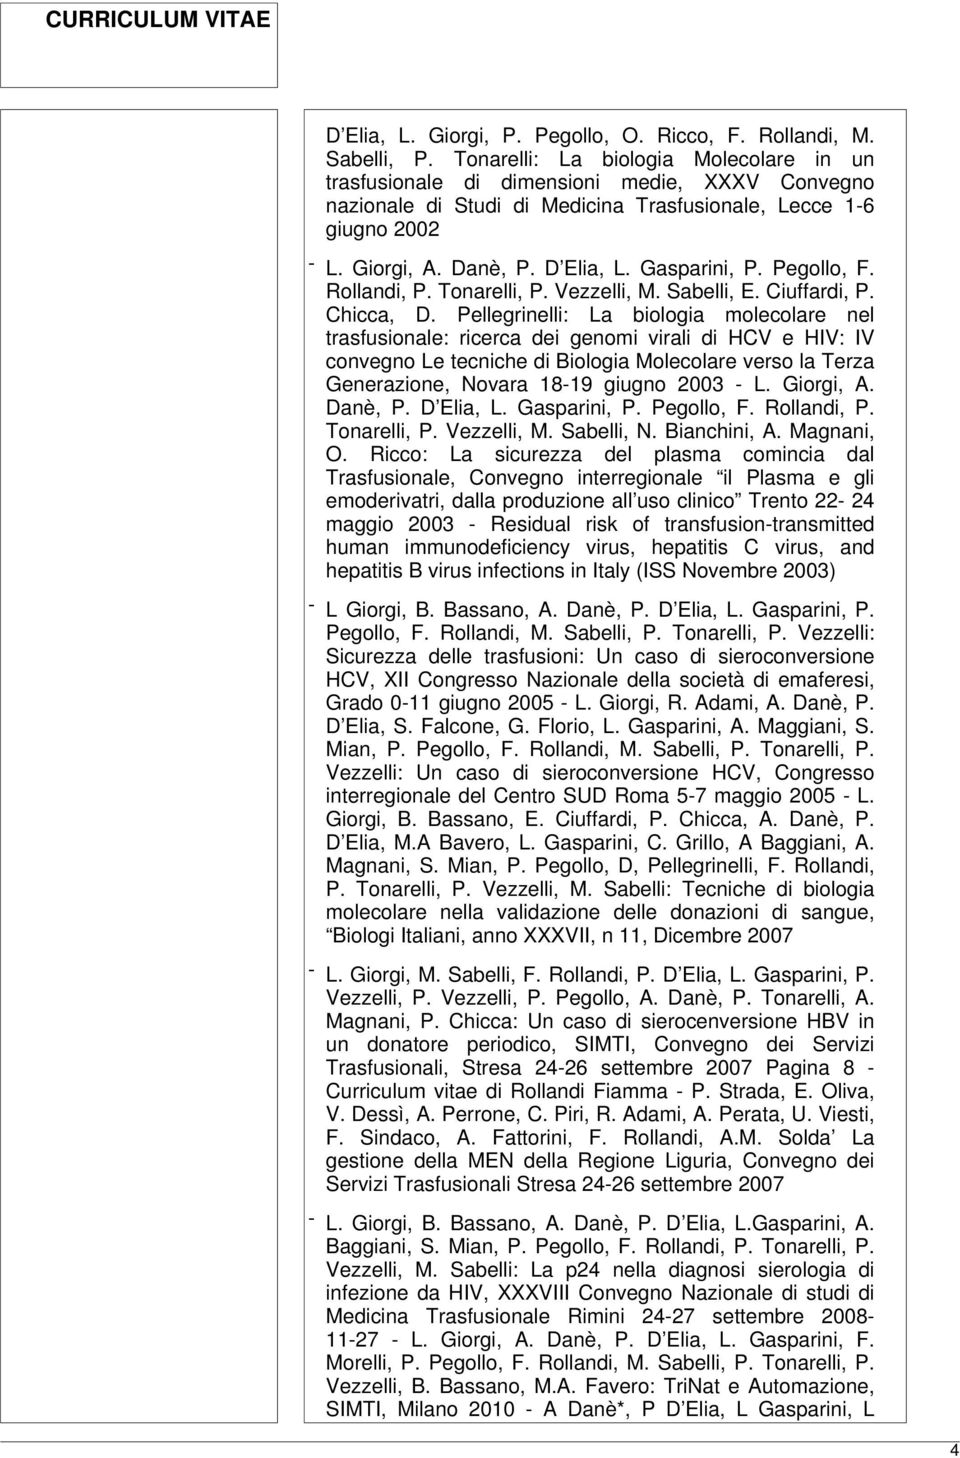 Gasparini, P. Pegollo, F. Rollandi, P. Tonarelli, P. Vezzelli, M. Sabelli, E. Ciuffardi, P. Chicca, D.